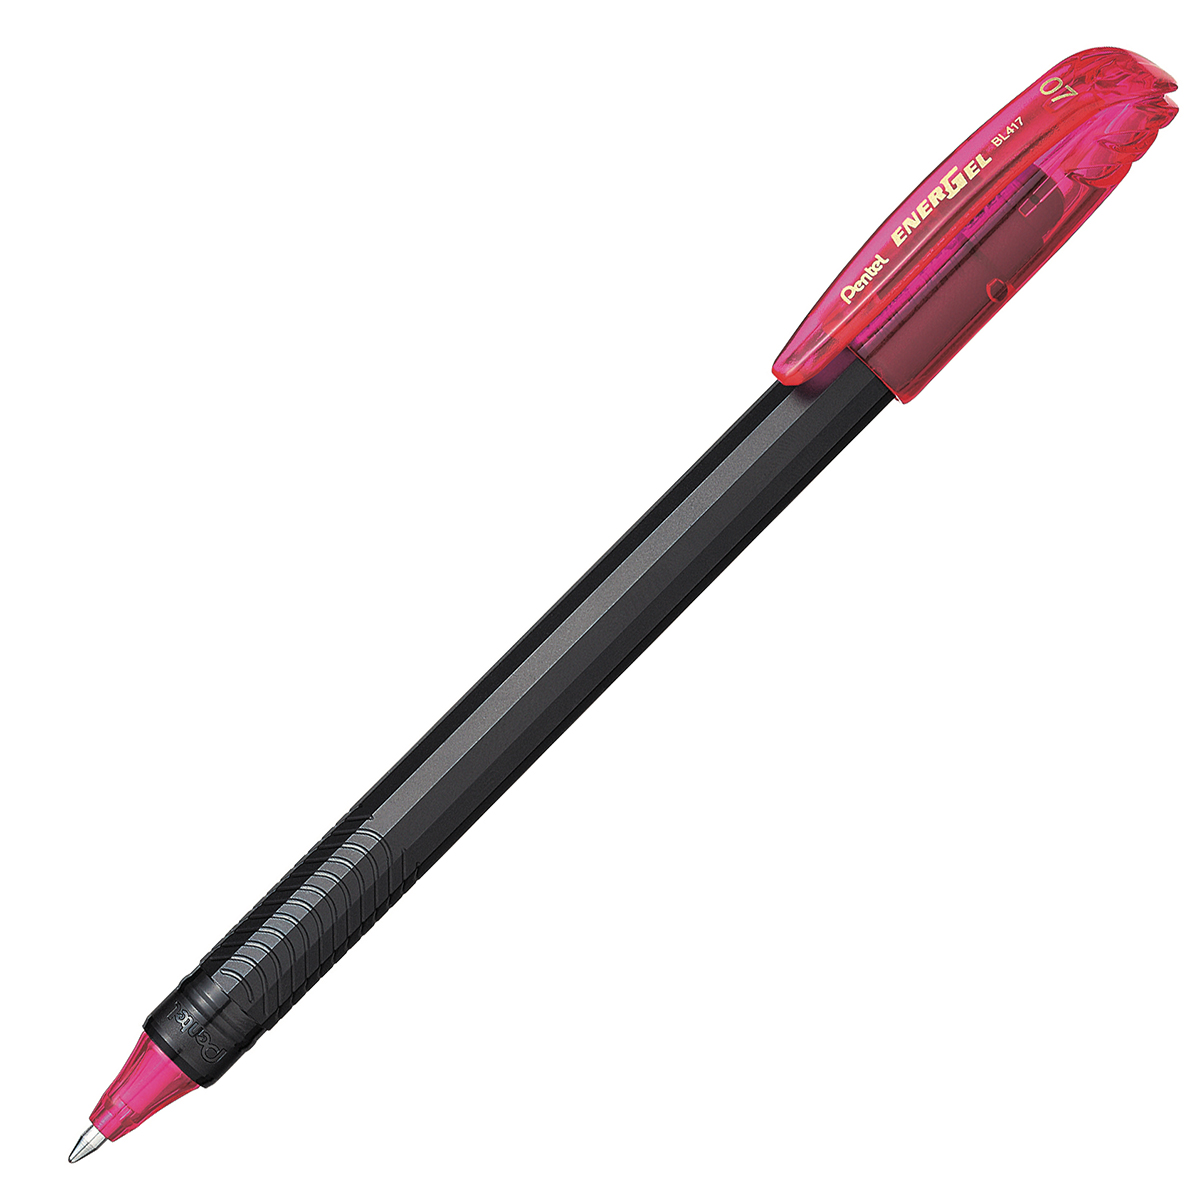 Bolígrafo Pentel energel stick, punto 0. Bolígrafo Pentel energel tinta gel color rosa, 0.7 mm secado rápido, peso ligero con 12 lados, hecho de 62% material reciclado. la tapa indica el color de la tinta                                                                                             7 mm (mediano), tinta rosa, 1 pieza      - PENTEL